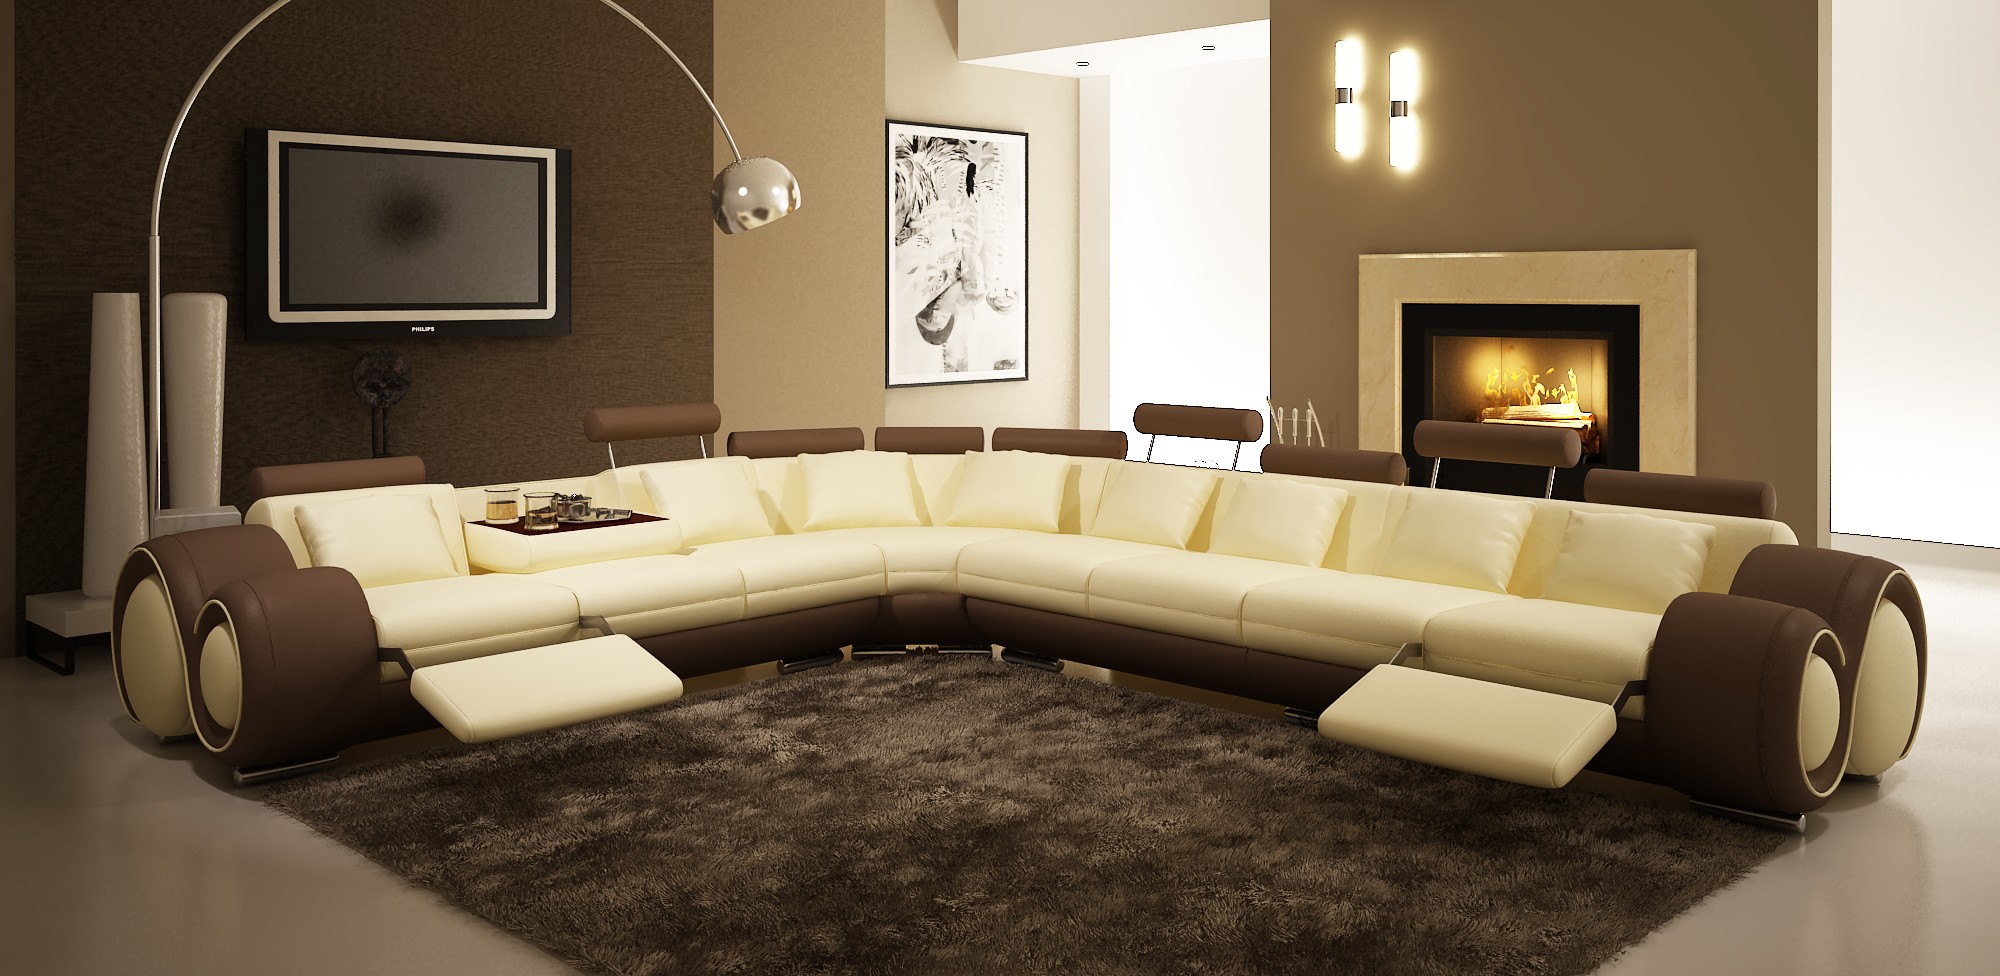 Роскошный мягкий угловой диван в интерьере